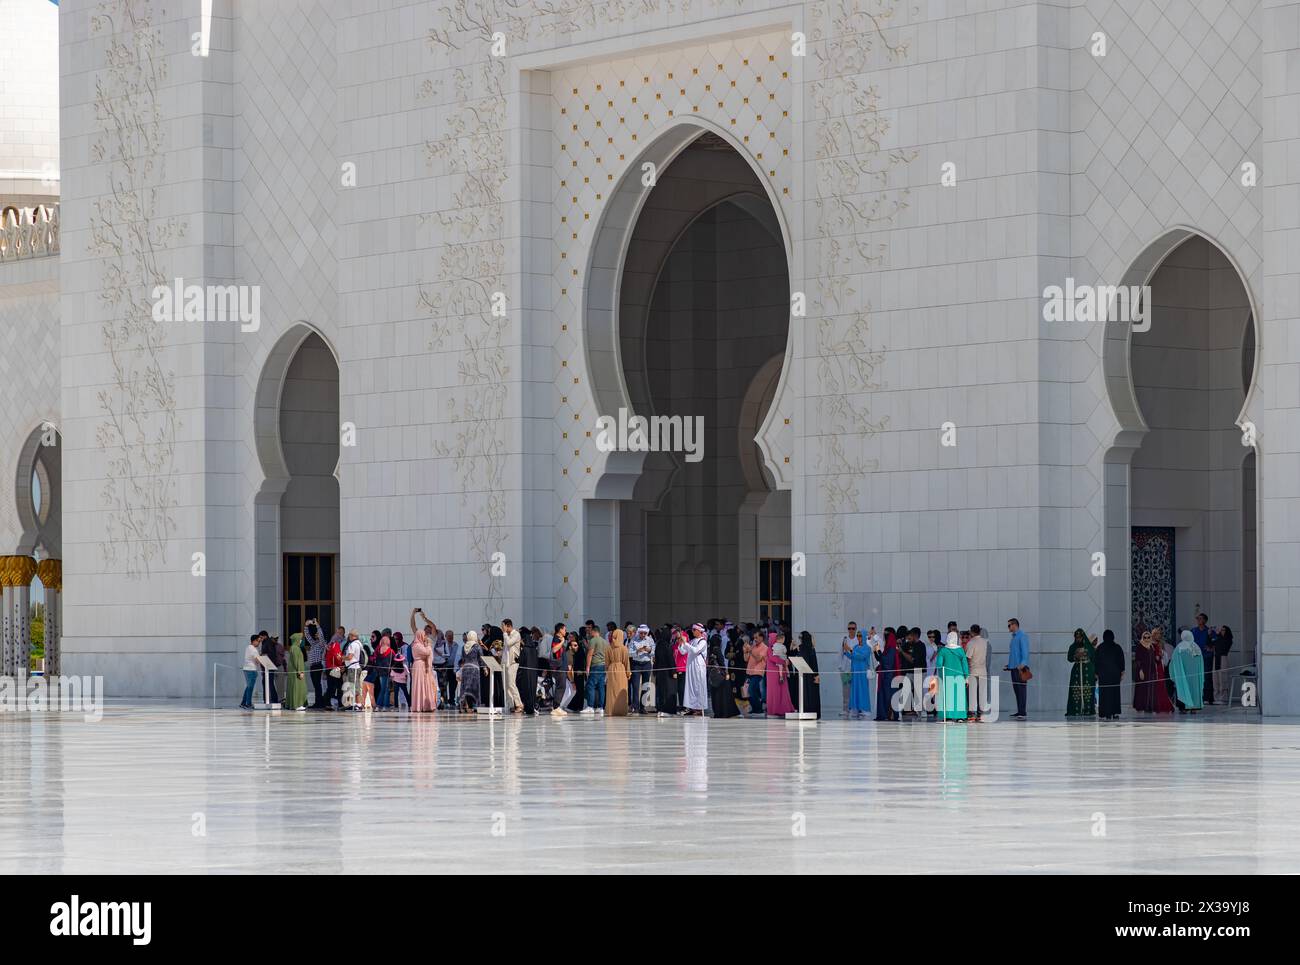 Ein Bild des Sahan Courtyard der Scheich-Zayed-Moschee mit einer großen Besuchermenge in der Nähe des Eingangs. Stockfoto